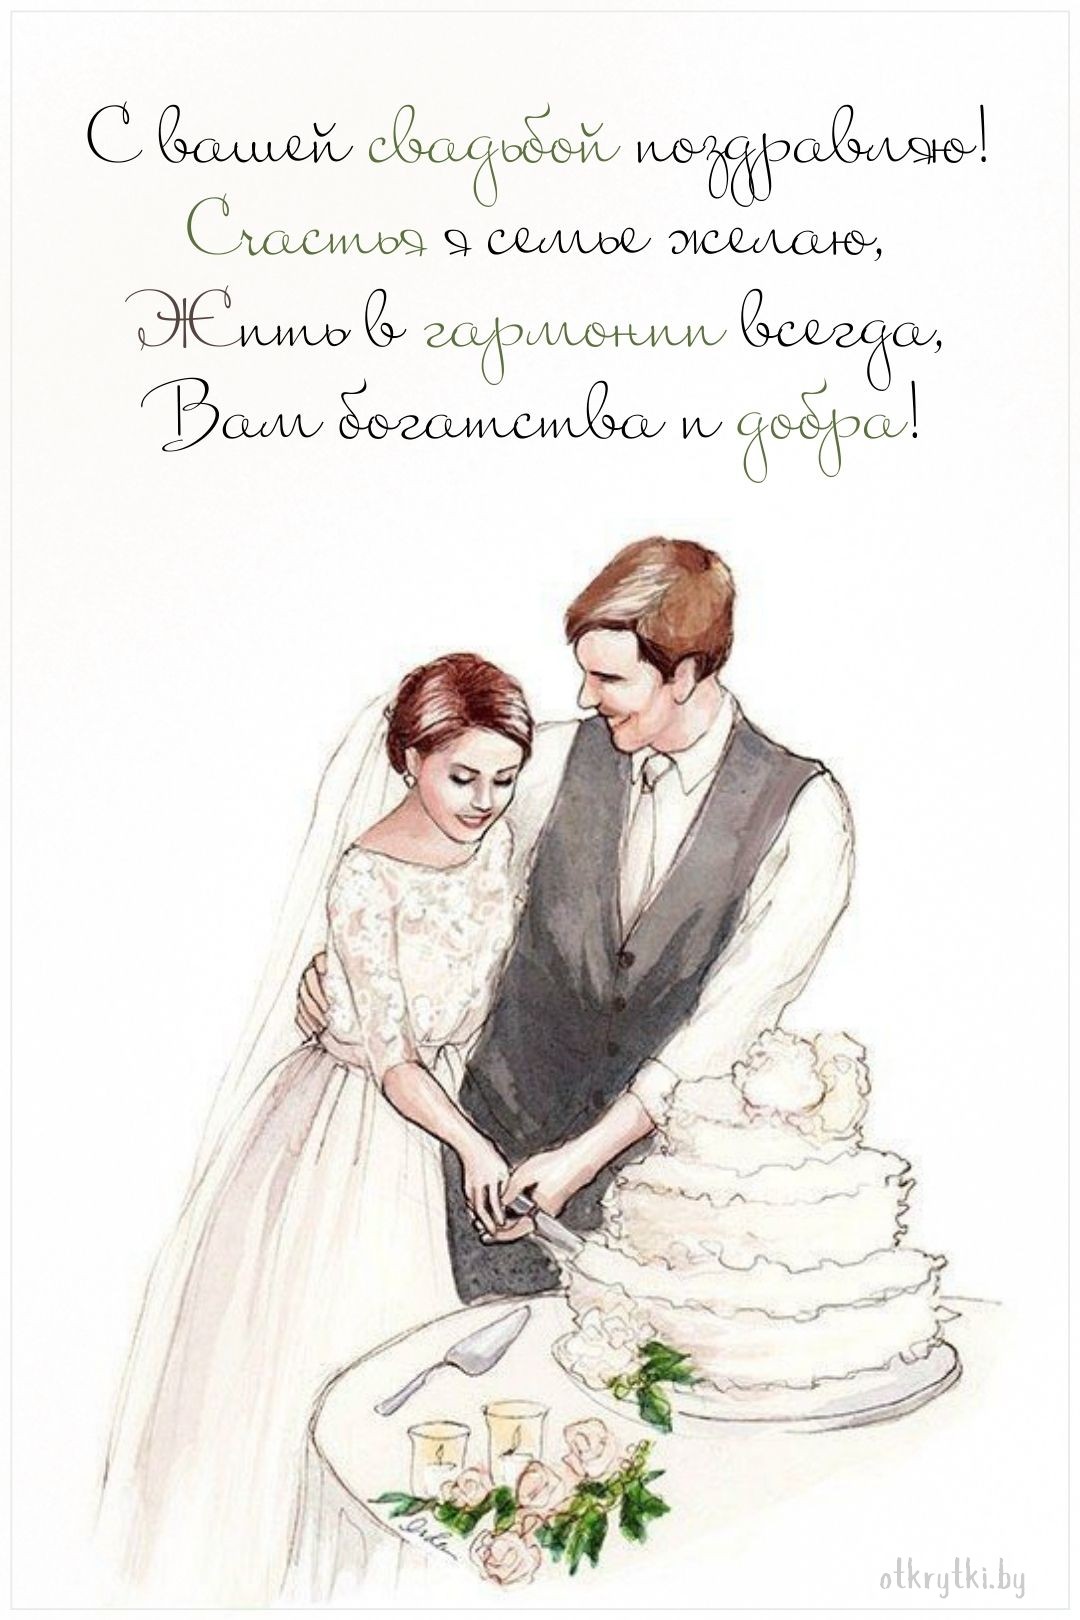 Бесплатная свадебная поздравительная открытка